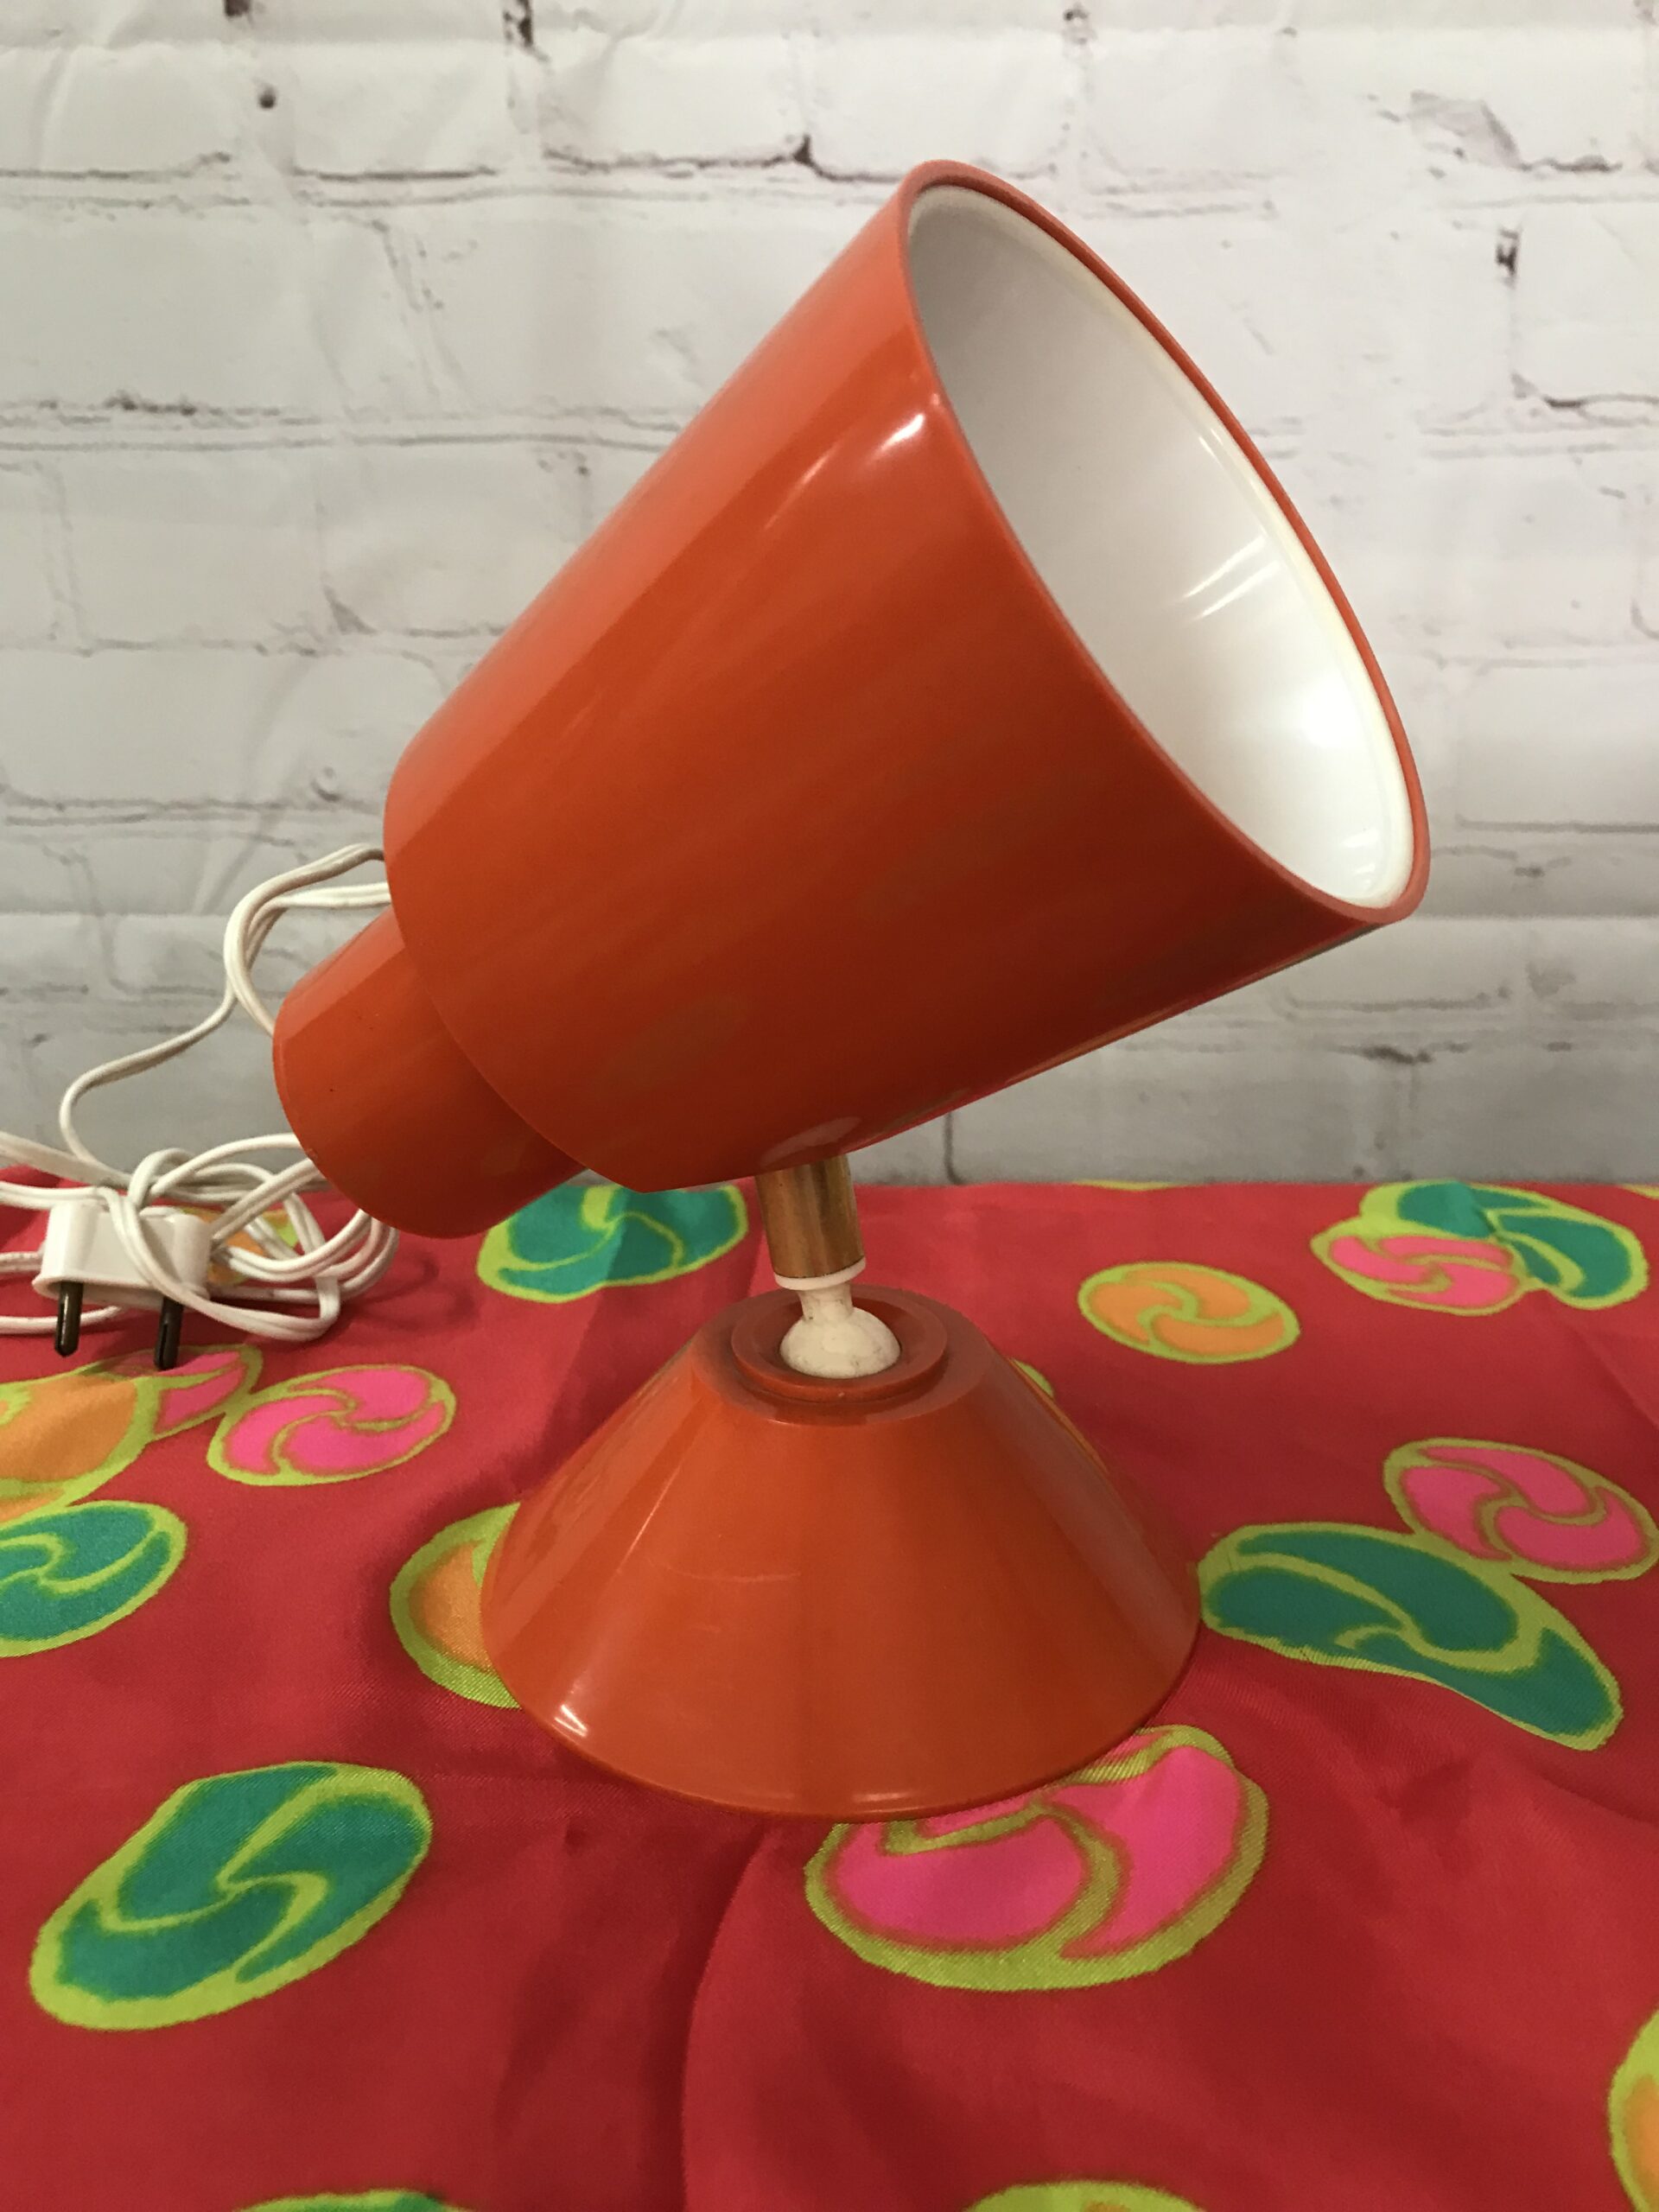 Petite lampe orange vintage années 60 - Ressourcerie Histoires Sans Fin